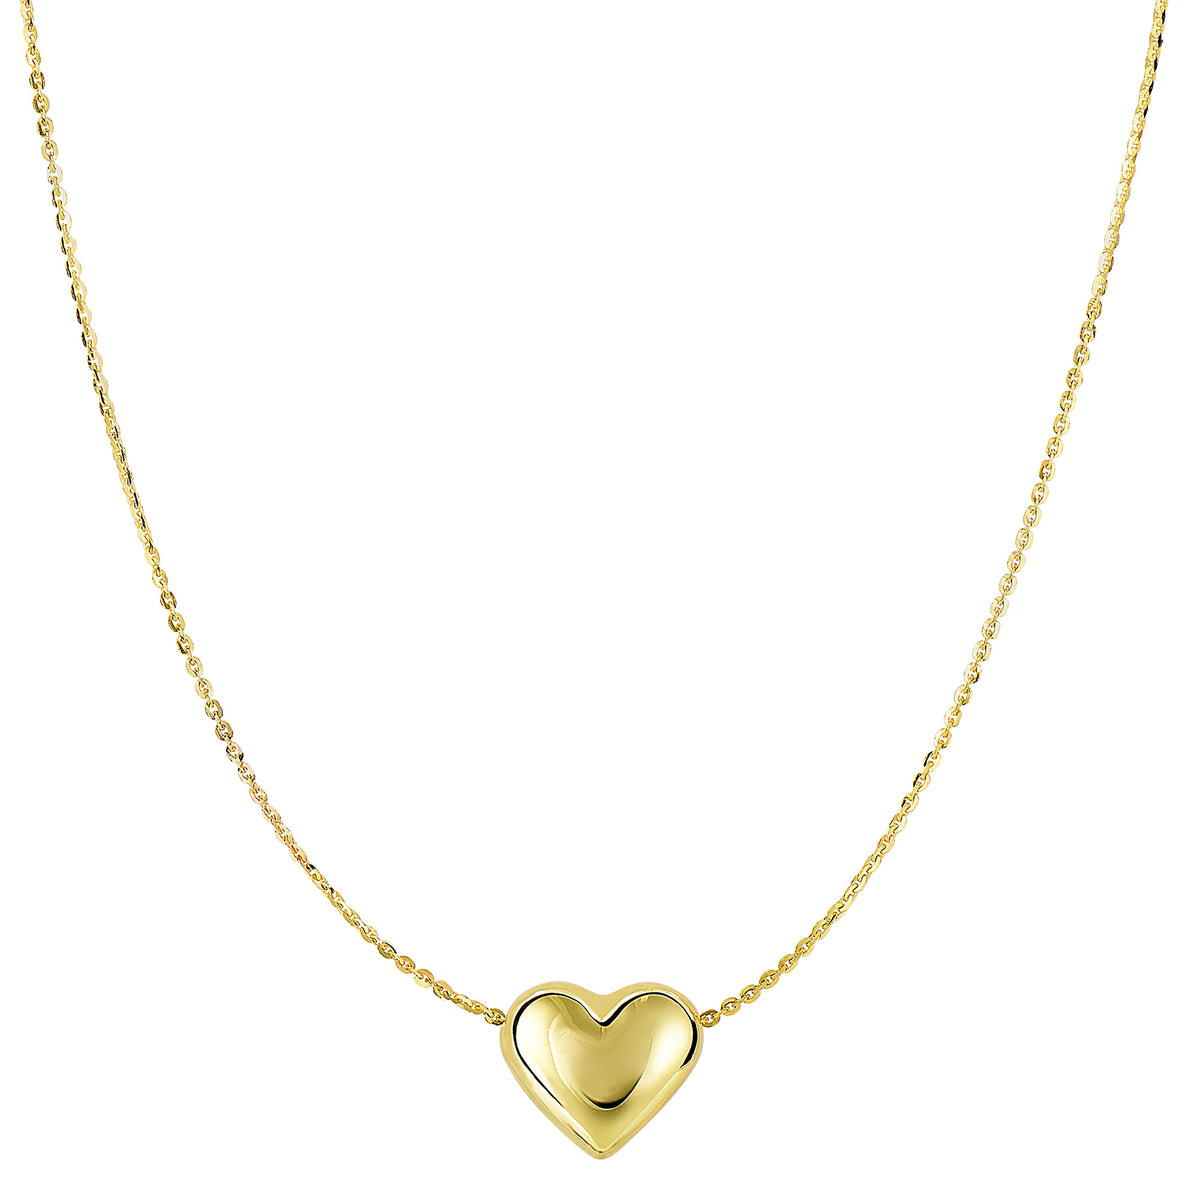 Ægte guld Puffed Heart Pendant halskæde, 18" fine designer smykker til mænd og kvinder